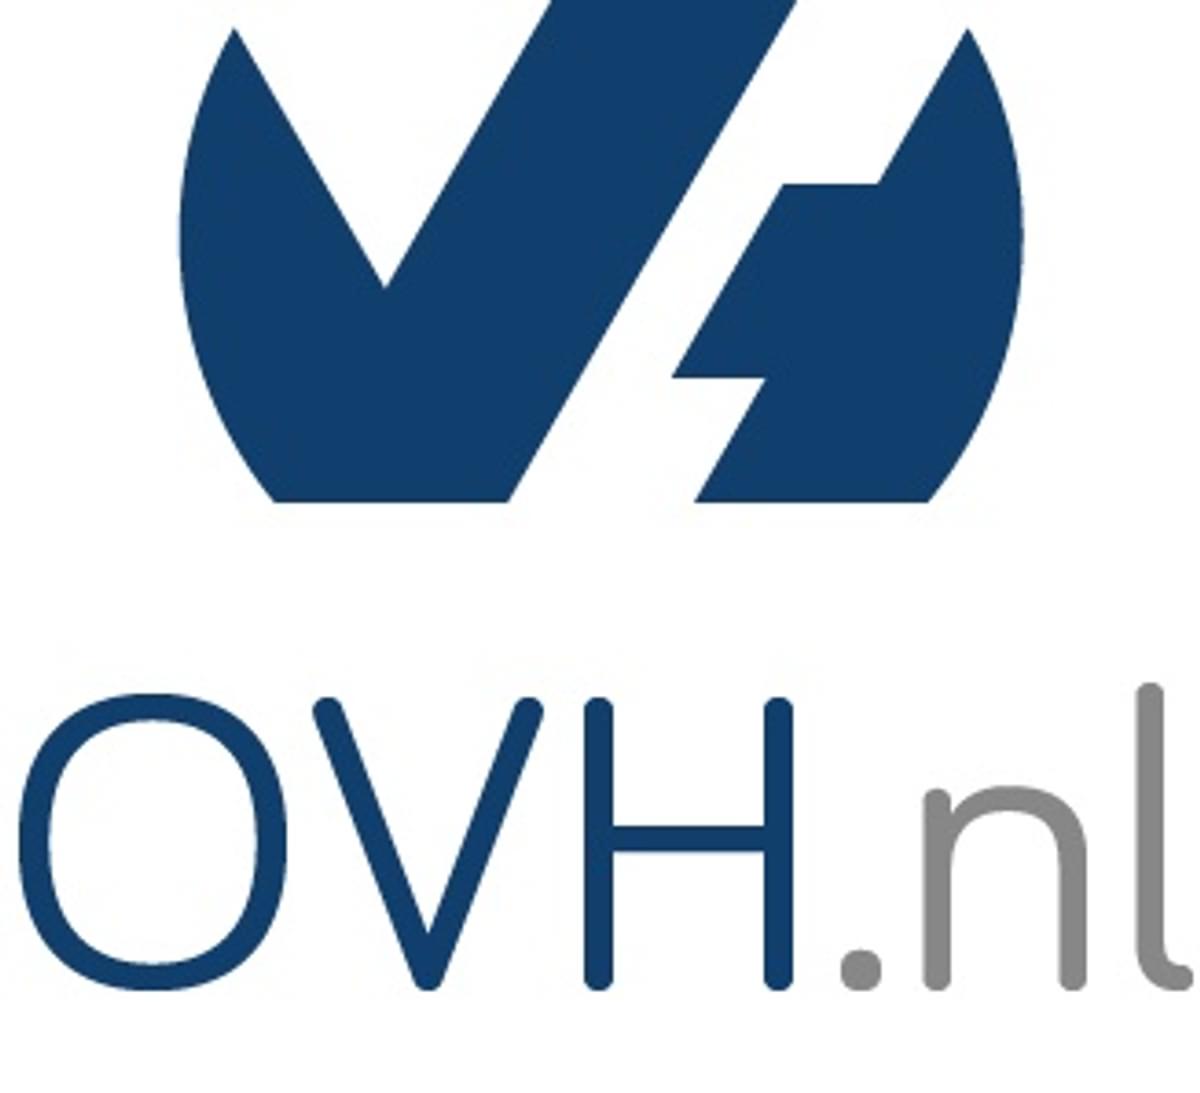 Villeroy & Boch migreert IT-infrastructuur naar OVH image